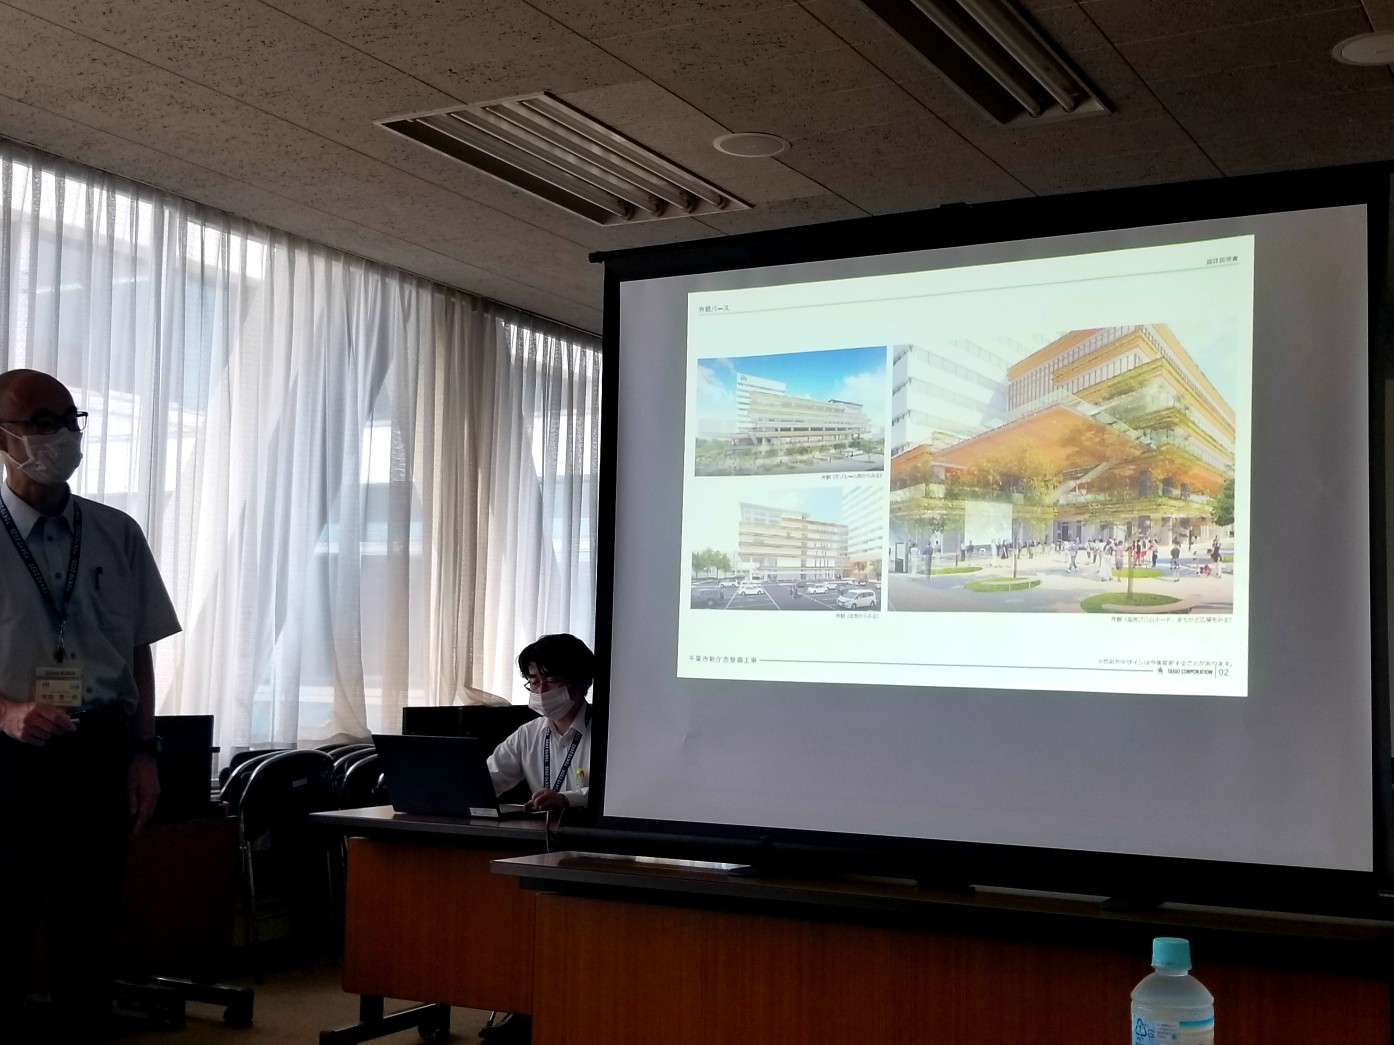 千葉市・新庁舎整備工事の実施設計を確認